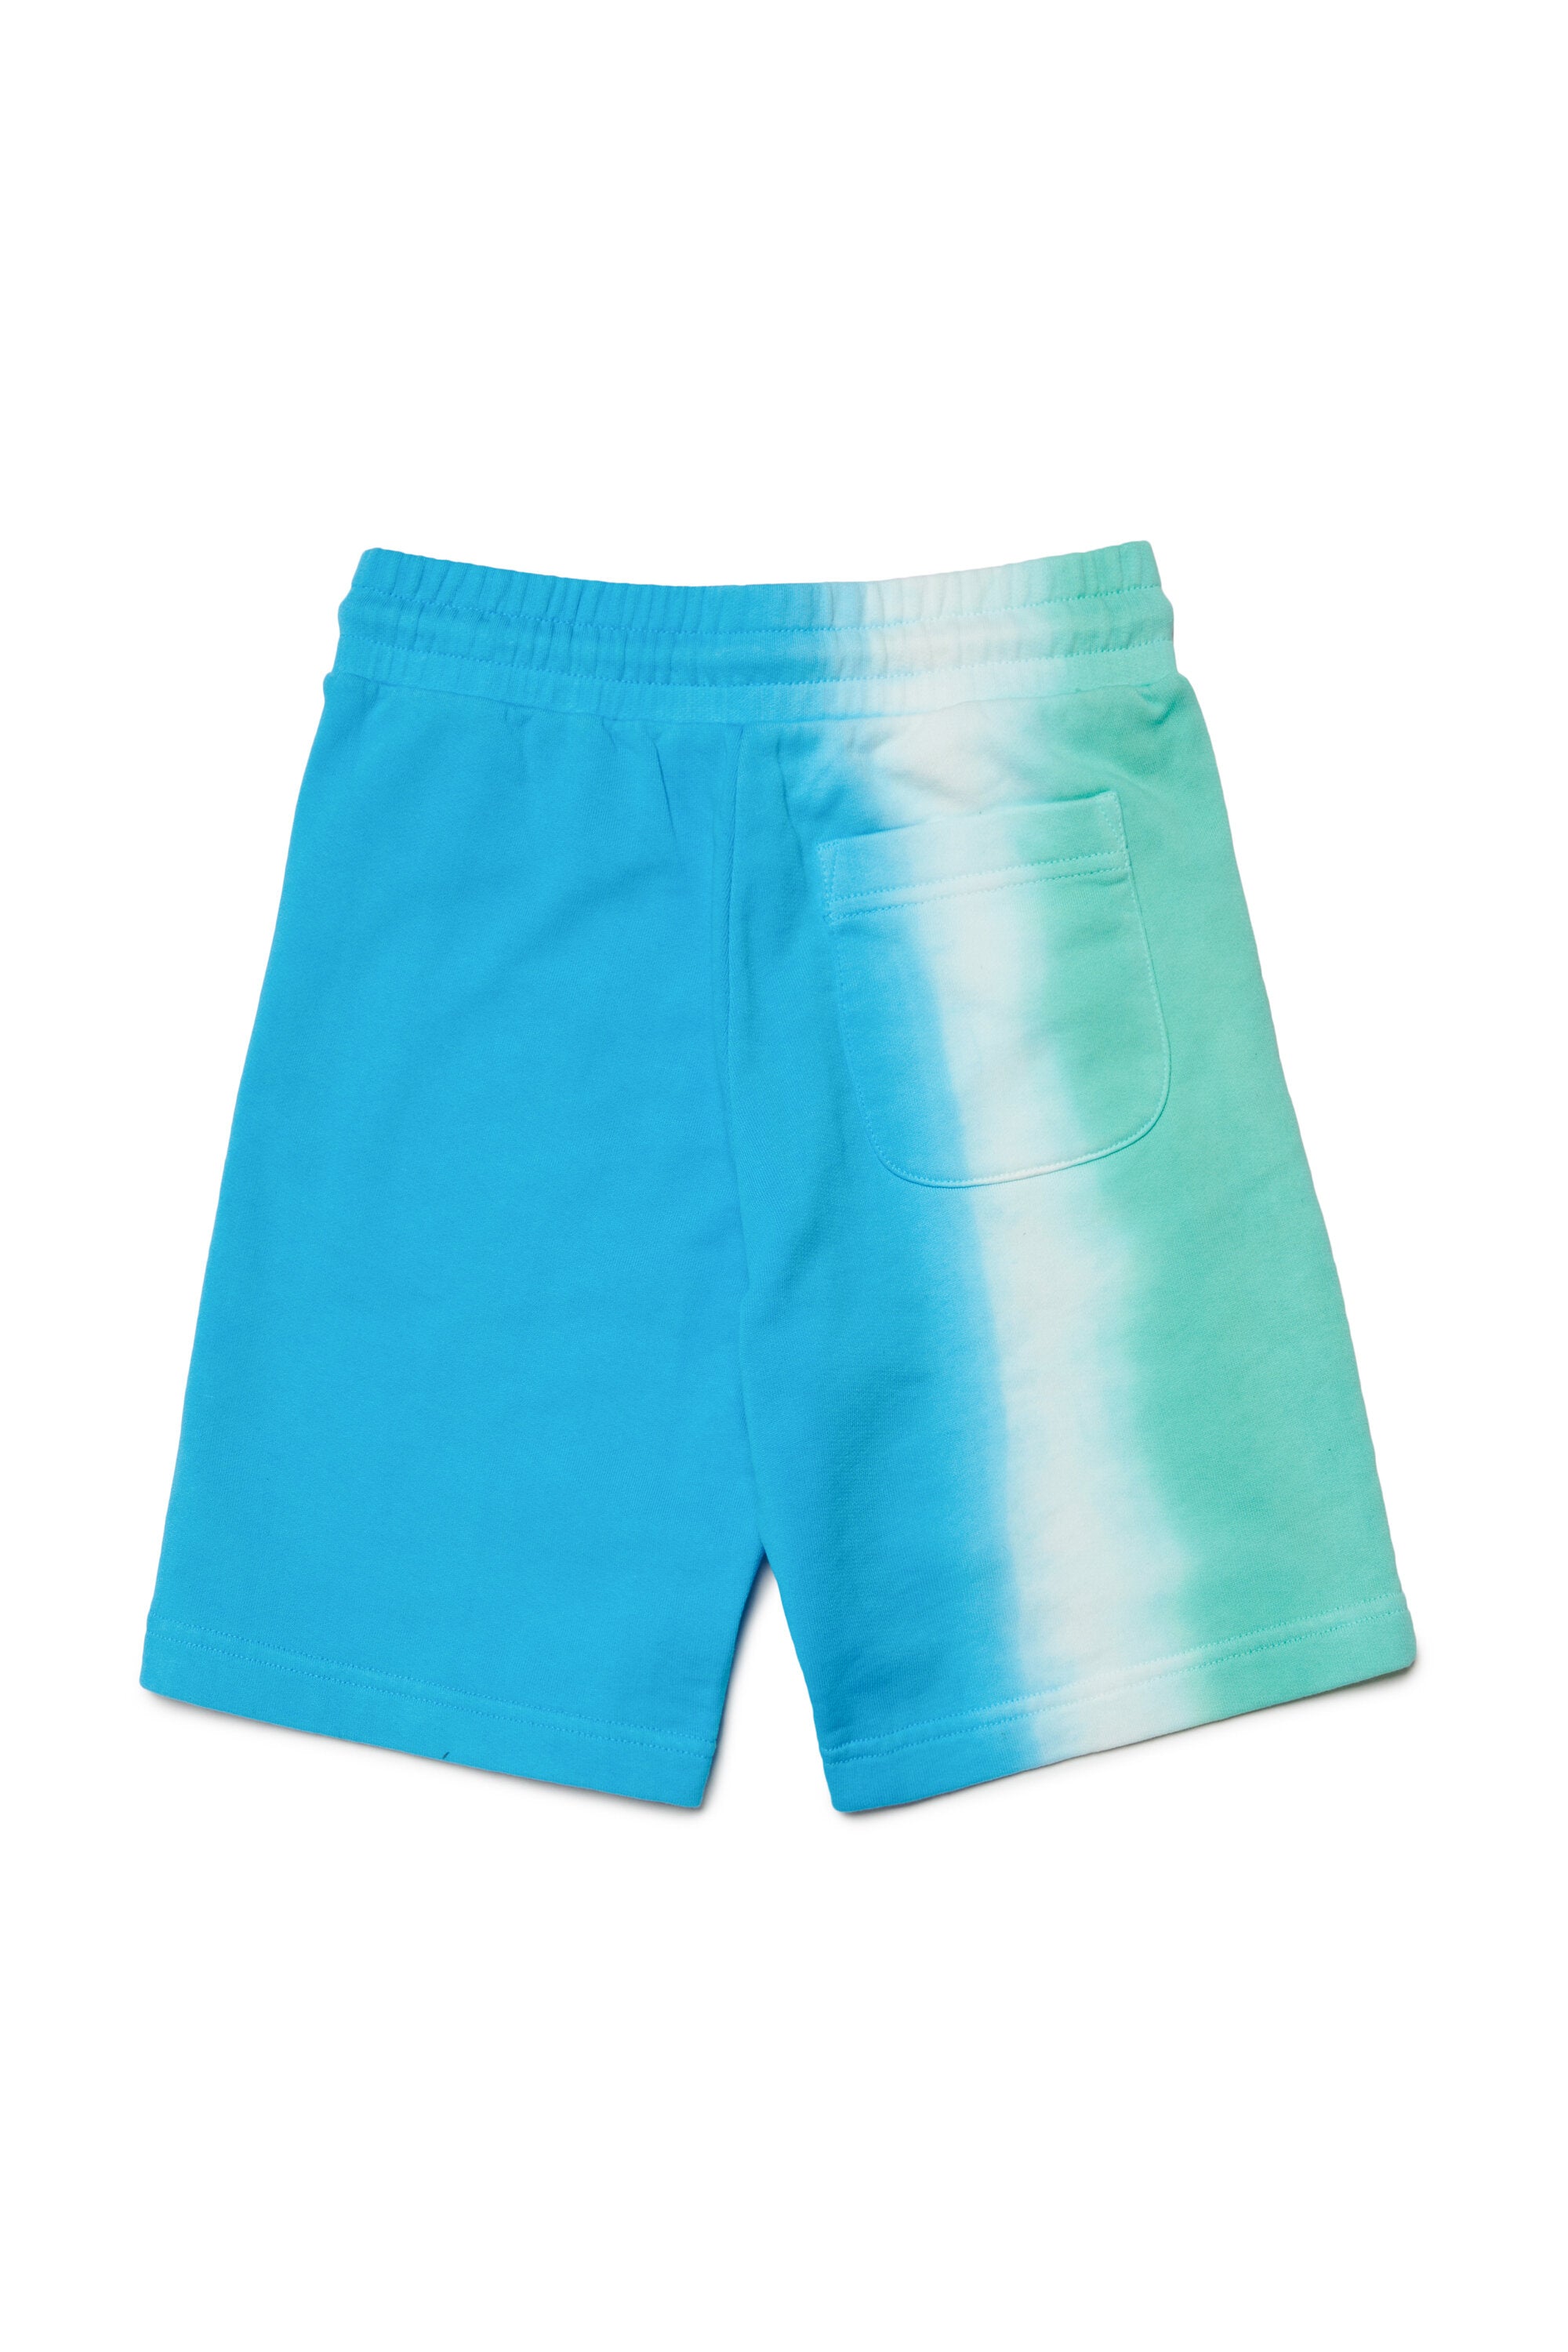 Pantalones cortos multicolores dip dye